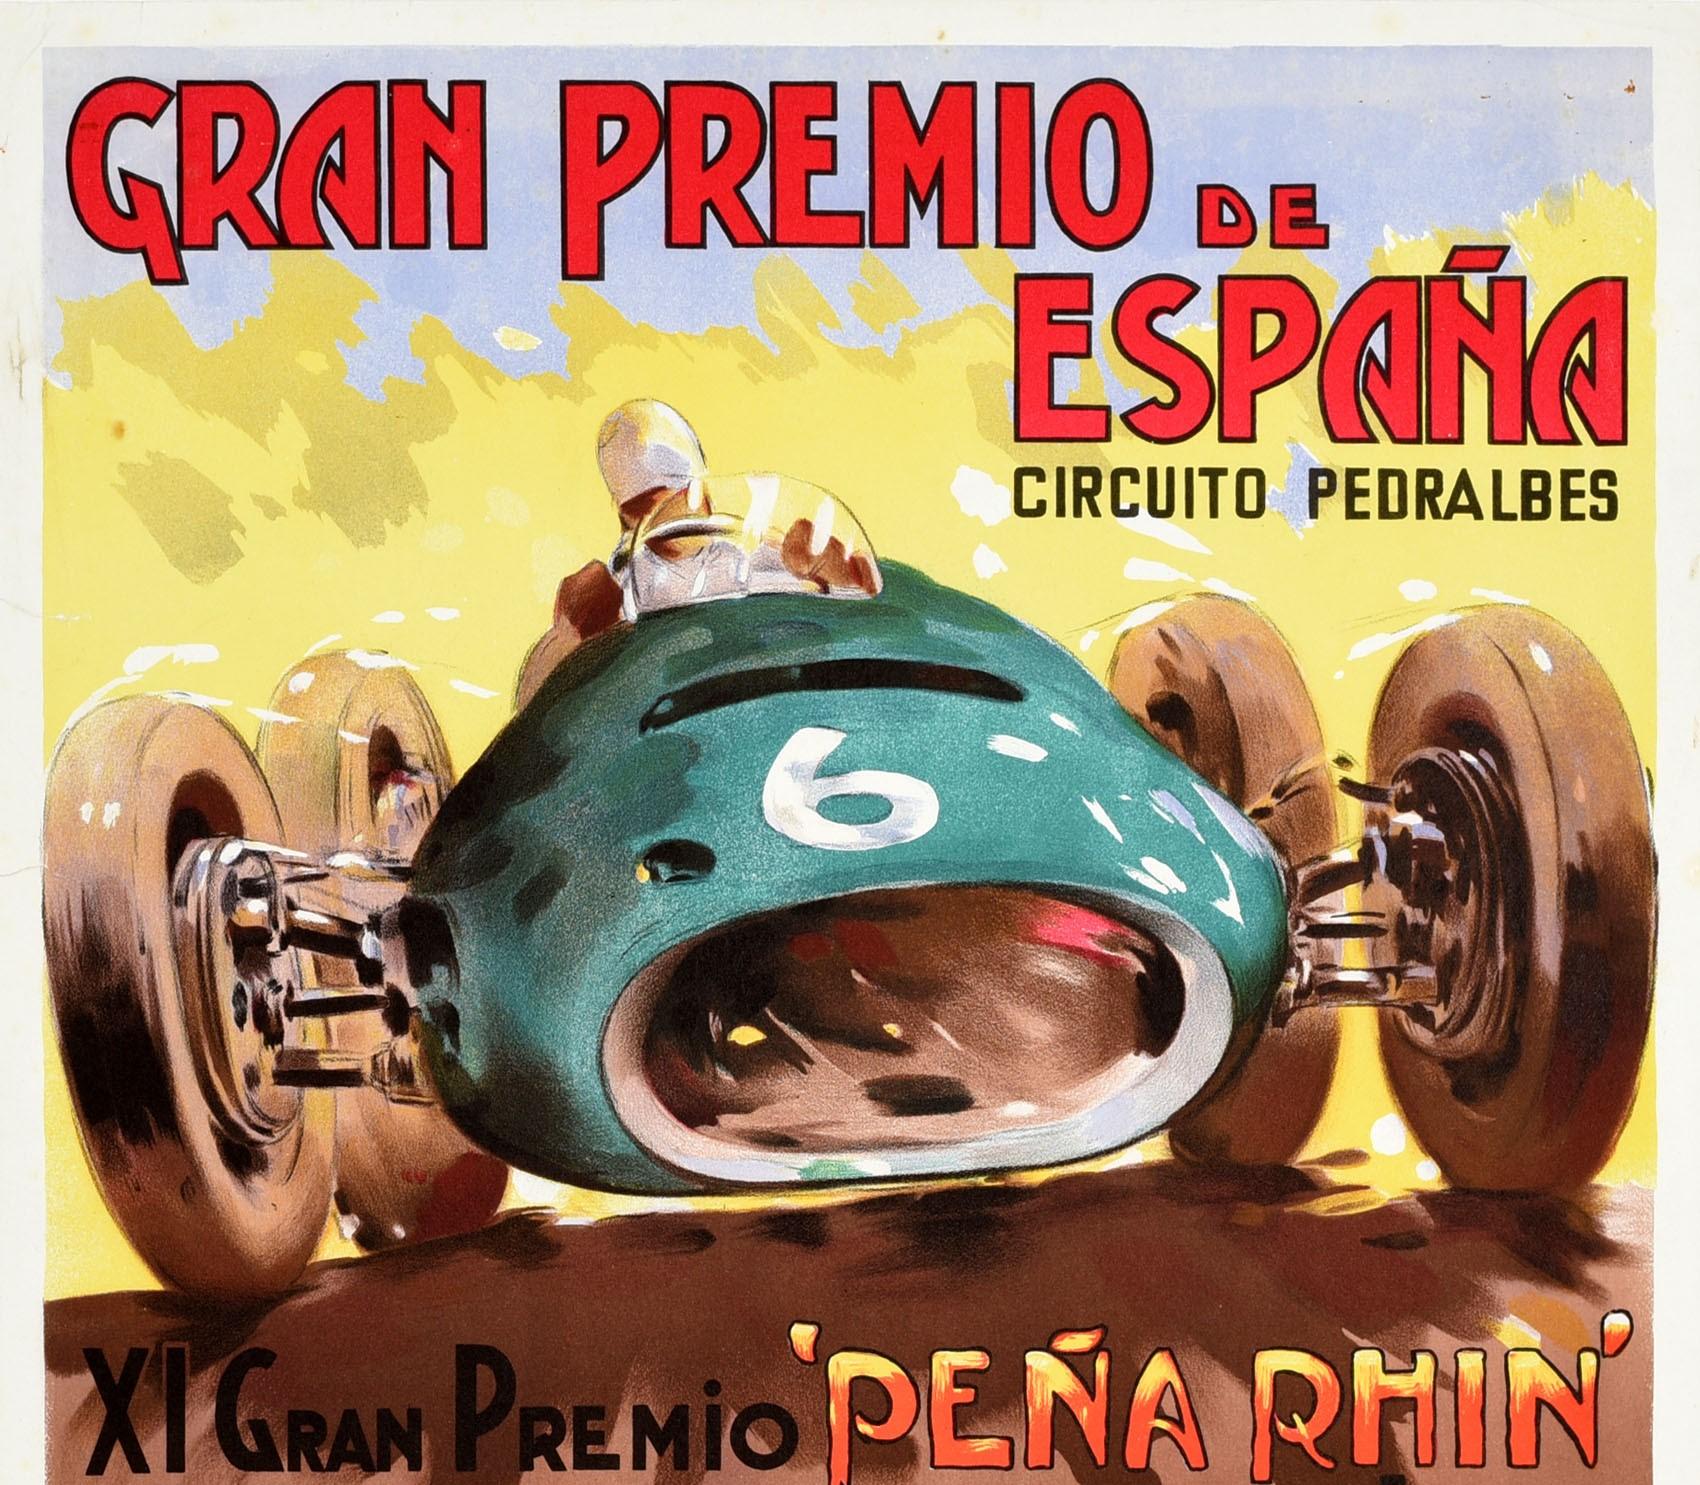 Espagnol Original Vintage Poster Gran Premio De Espana Spain Grand Prix Formula One Race en vente